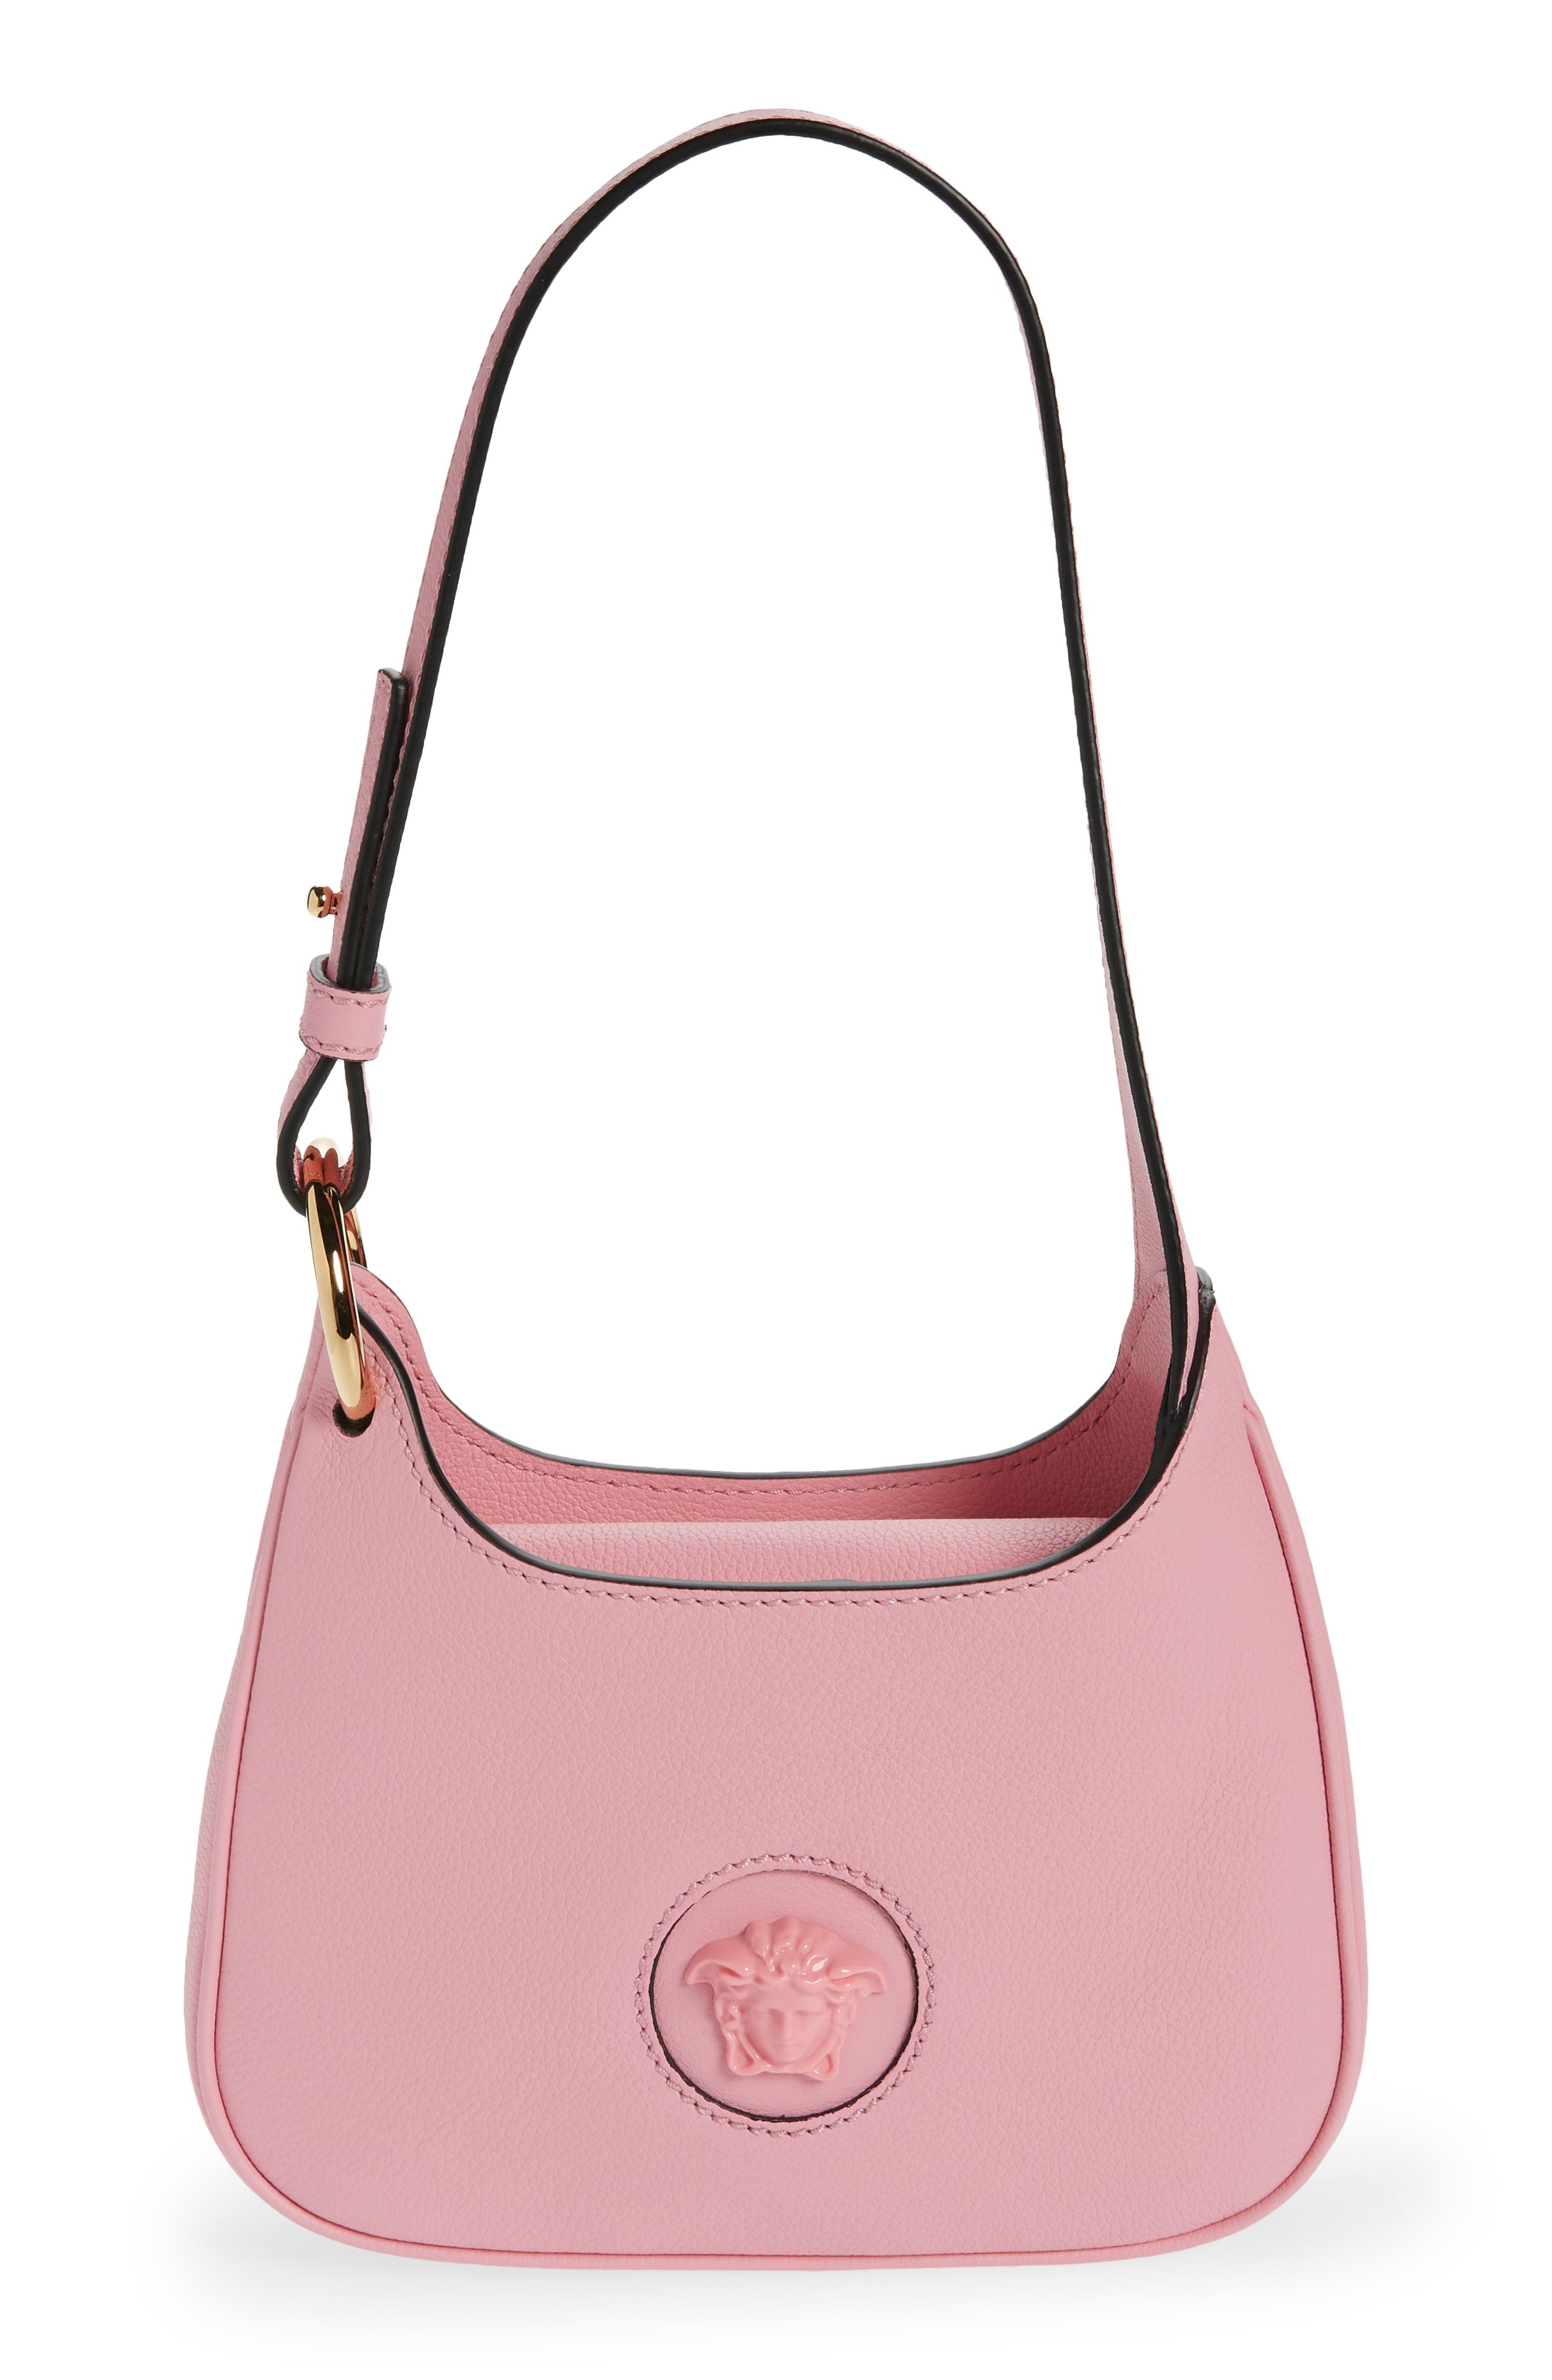 Pink Versace Bags - Bloomingdale's